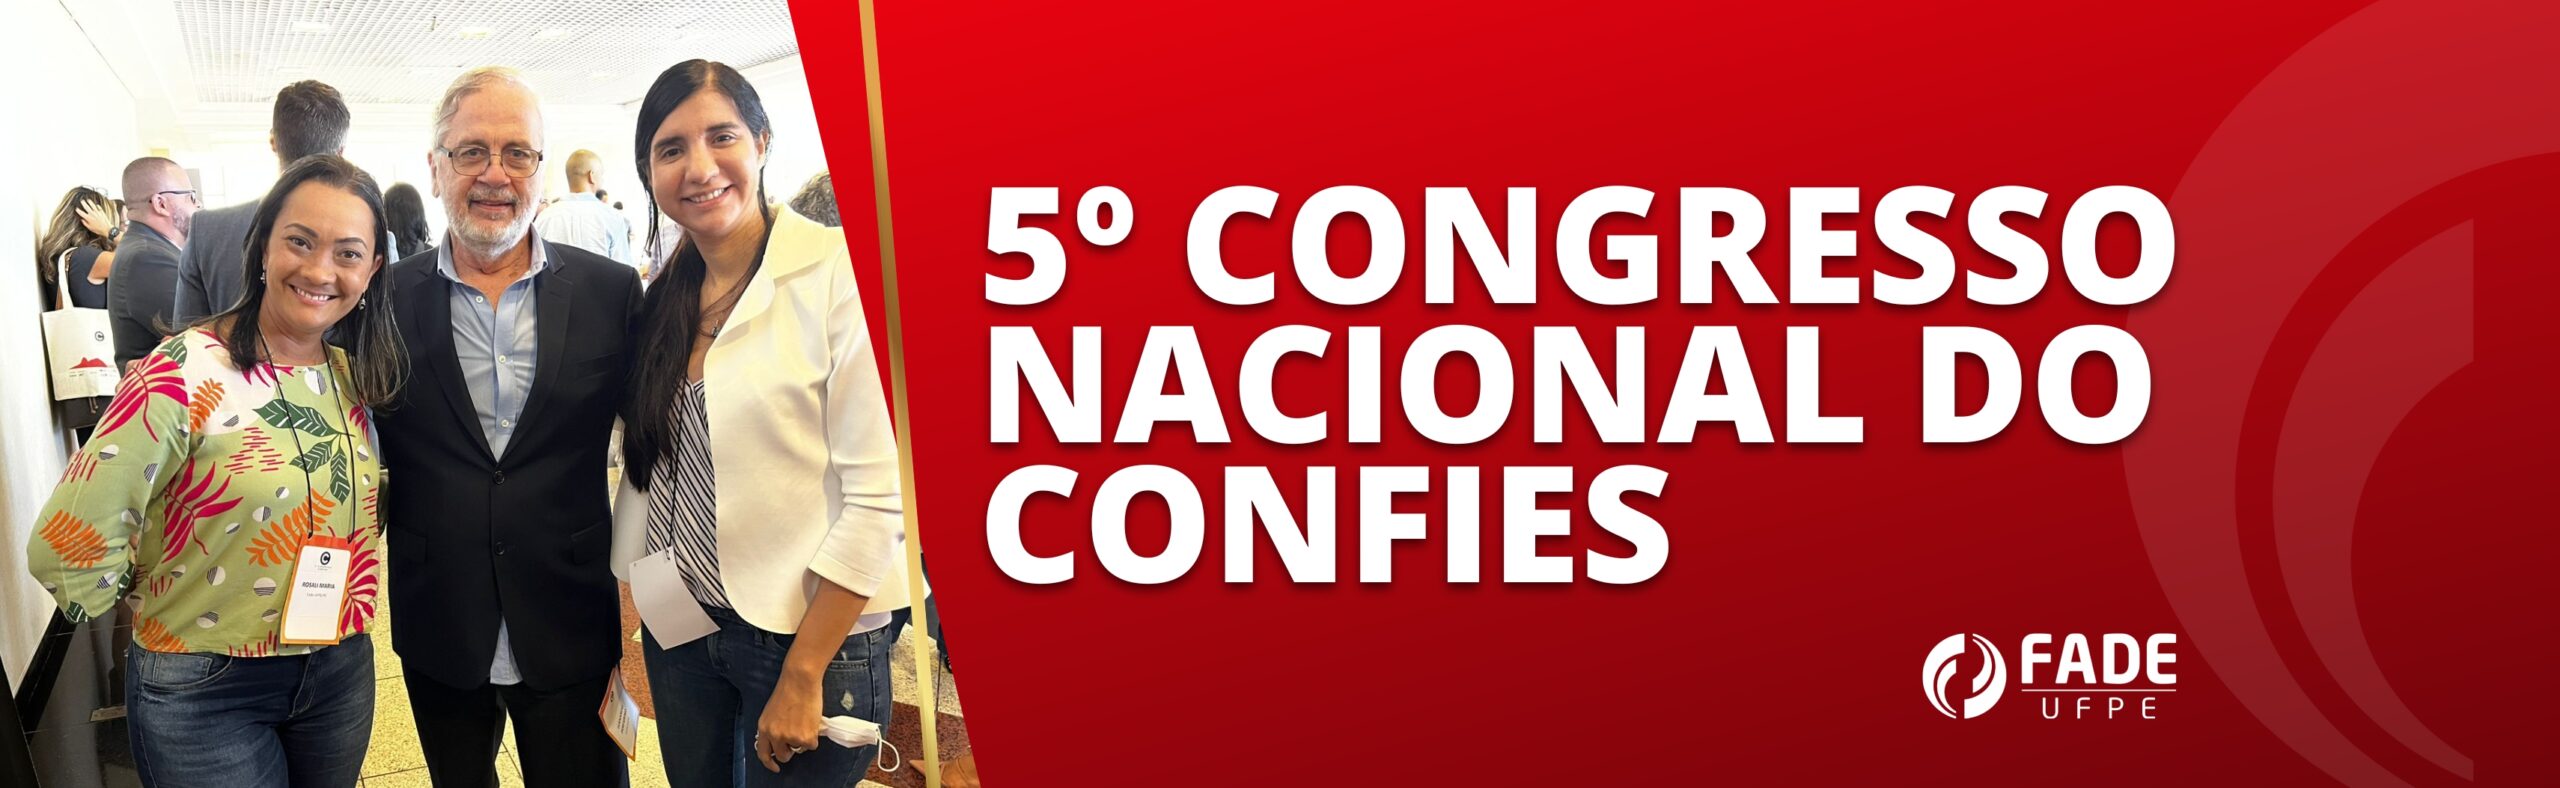 Fade-UFPE marca presença no 5º Congresso Nacional do Confies